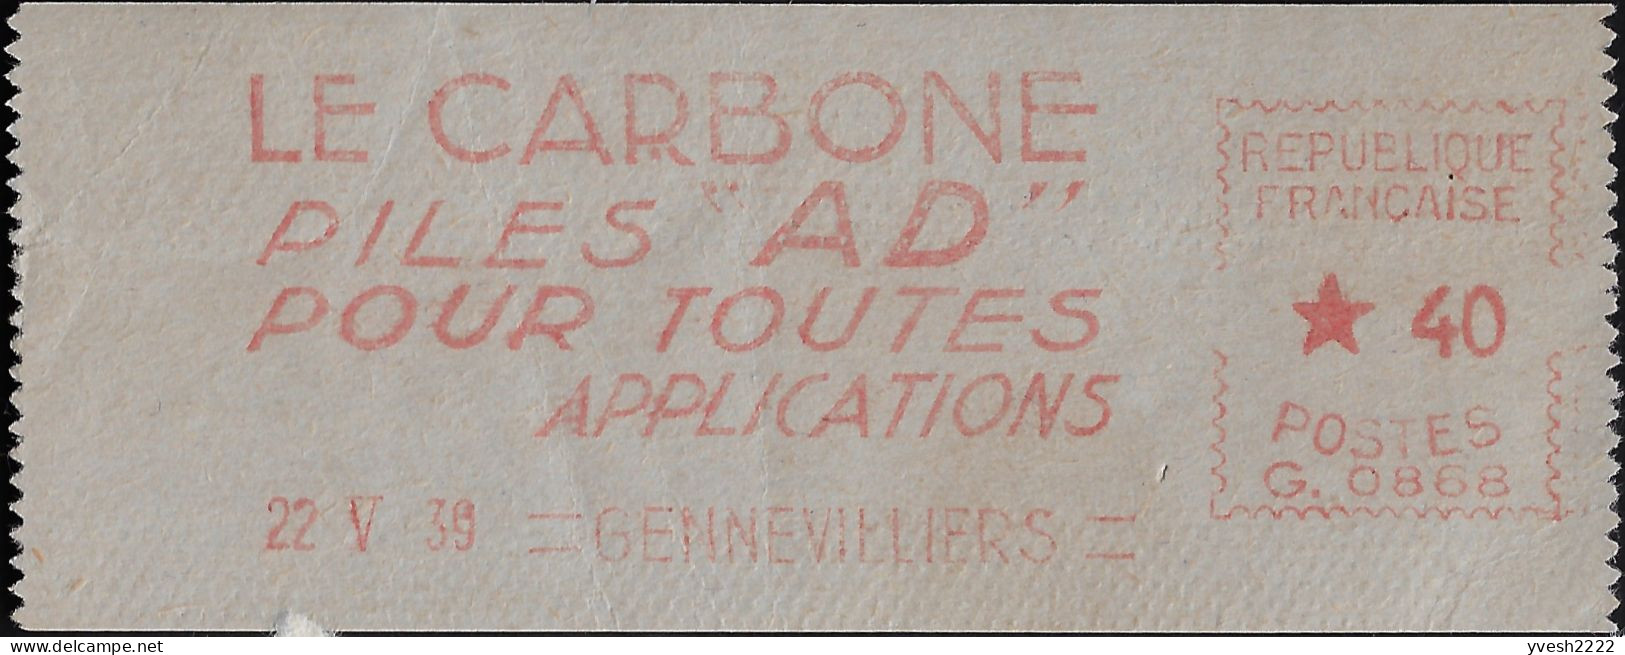 France 1939. Empreinte De Machine à Affranchir. Le Carbone, Piles AD Pour Toutes Applications - Elettricità